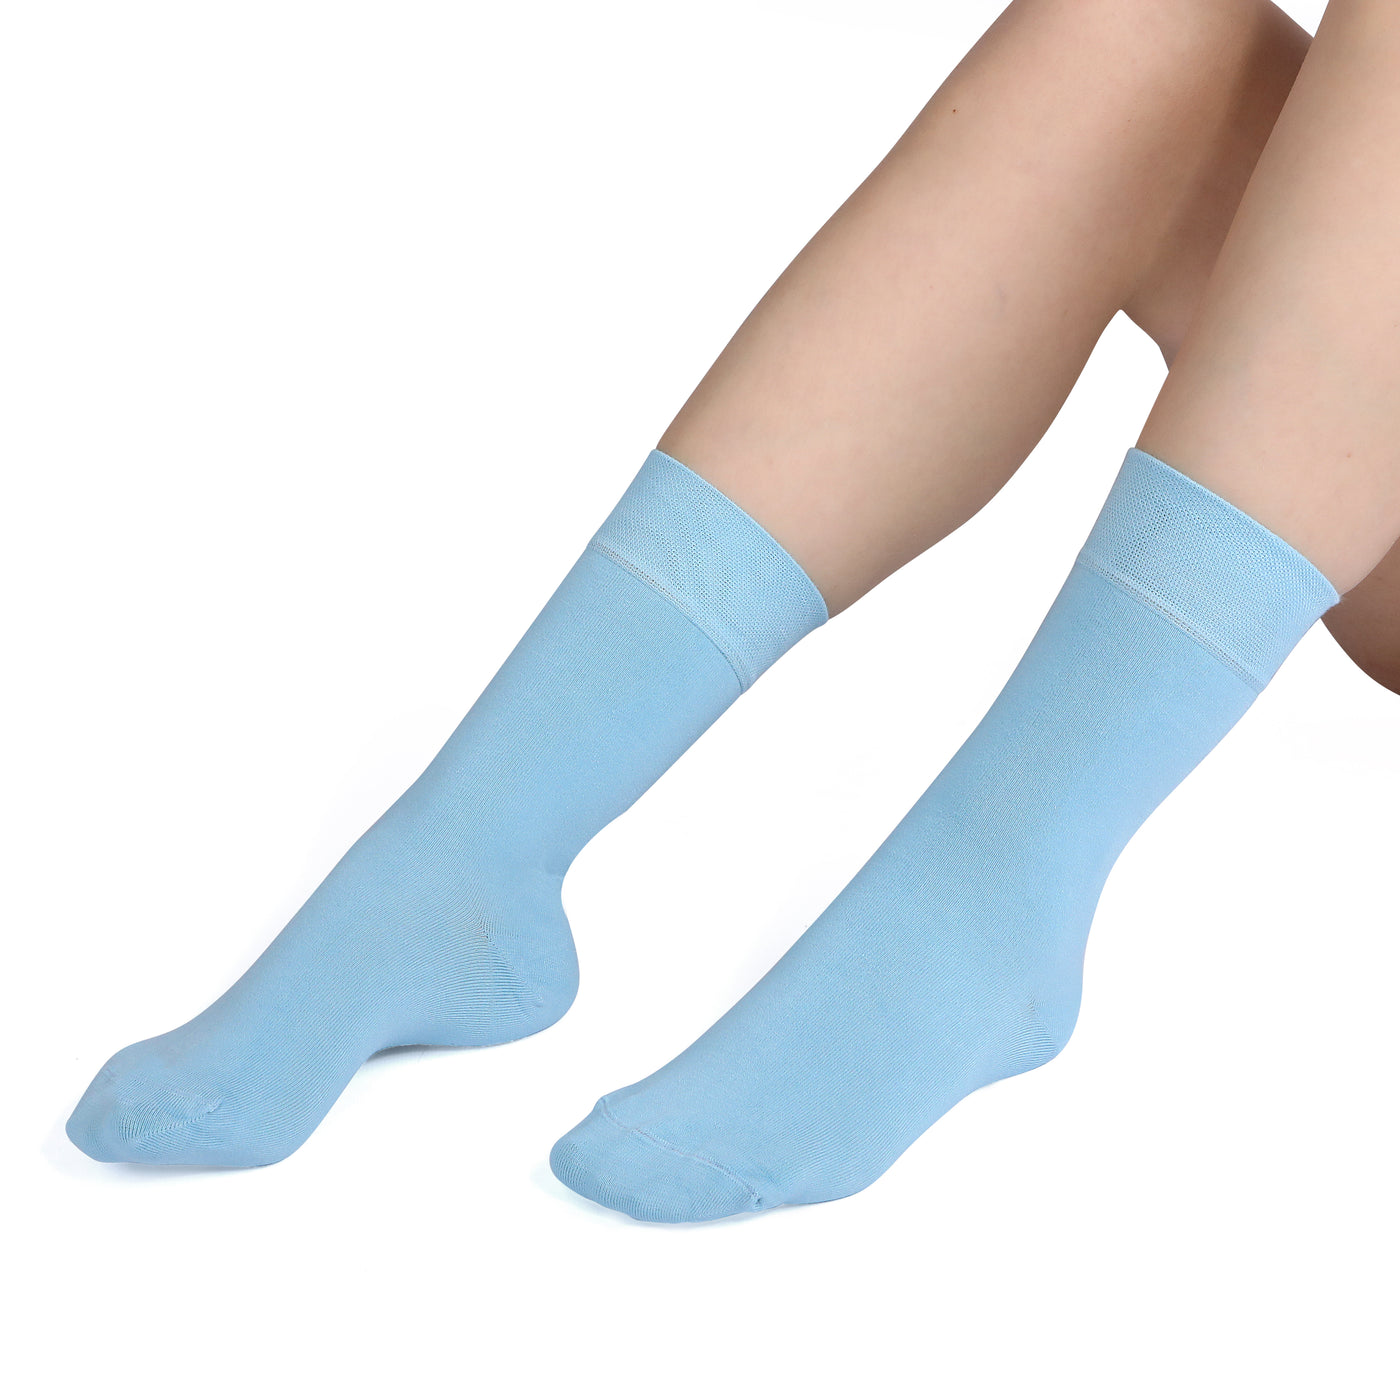 Elyfer-Socks-Pool-Blue-Bamboo-Crew-Socks-for-Women-in-Gift-Box #color_blue